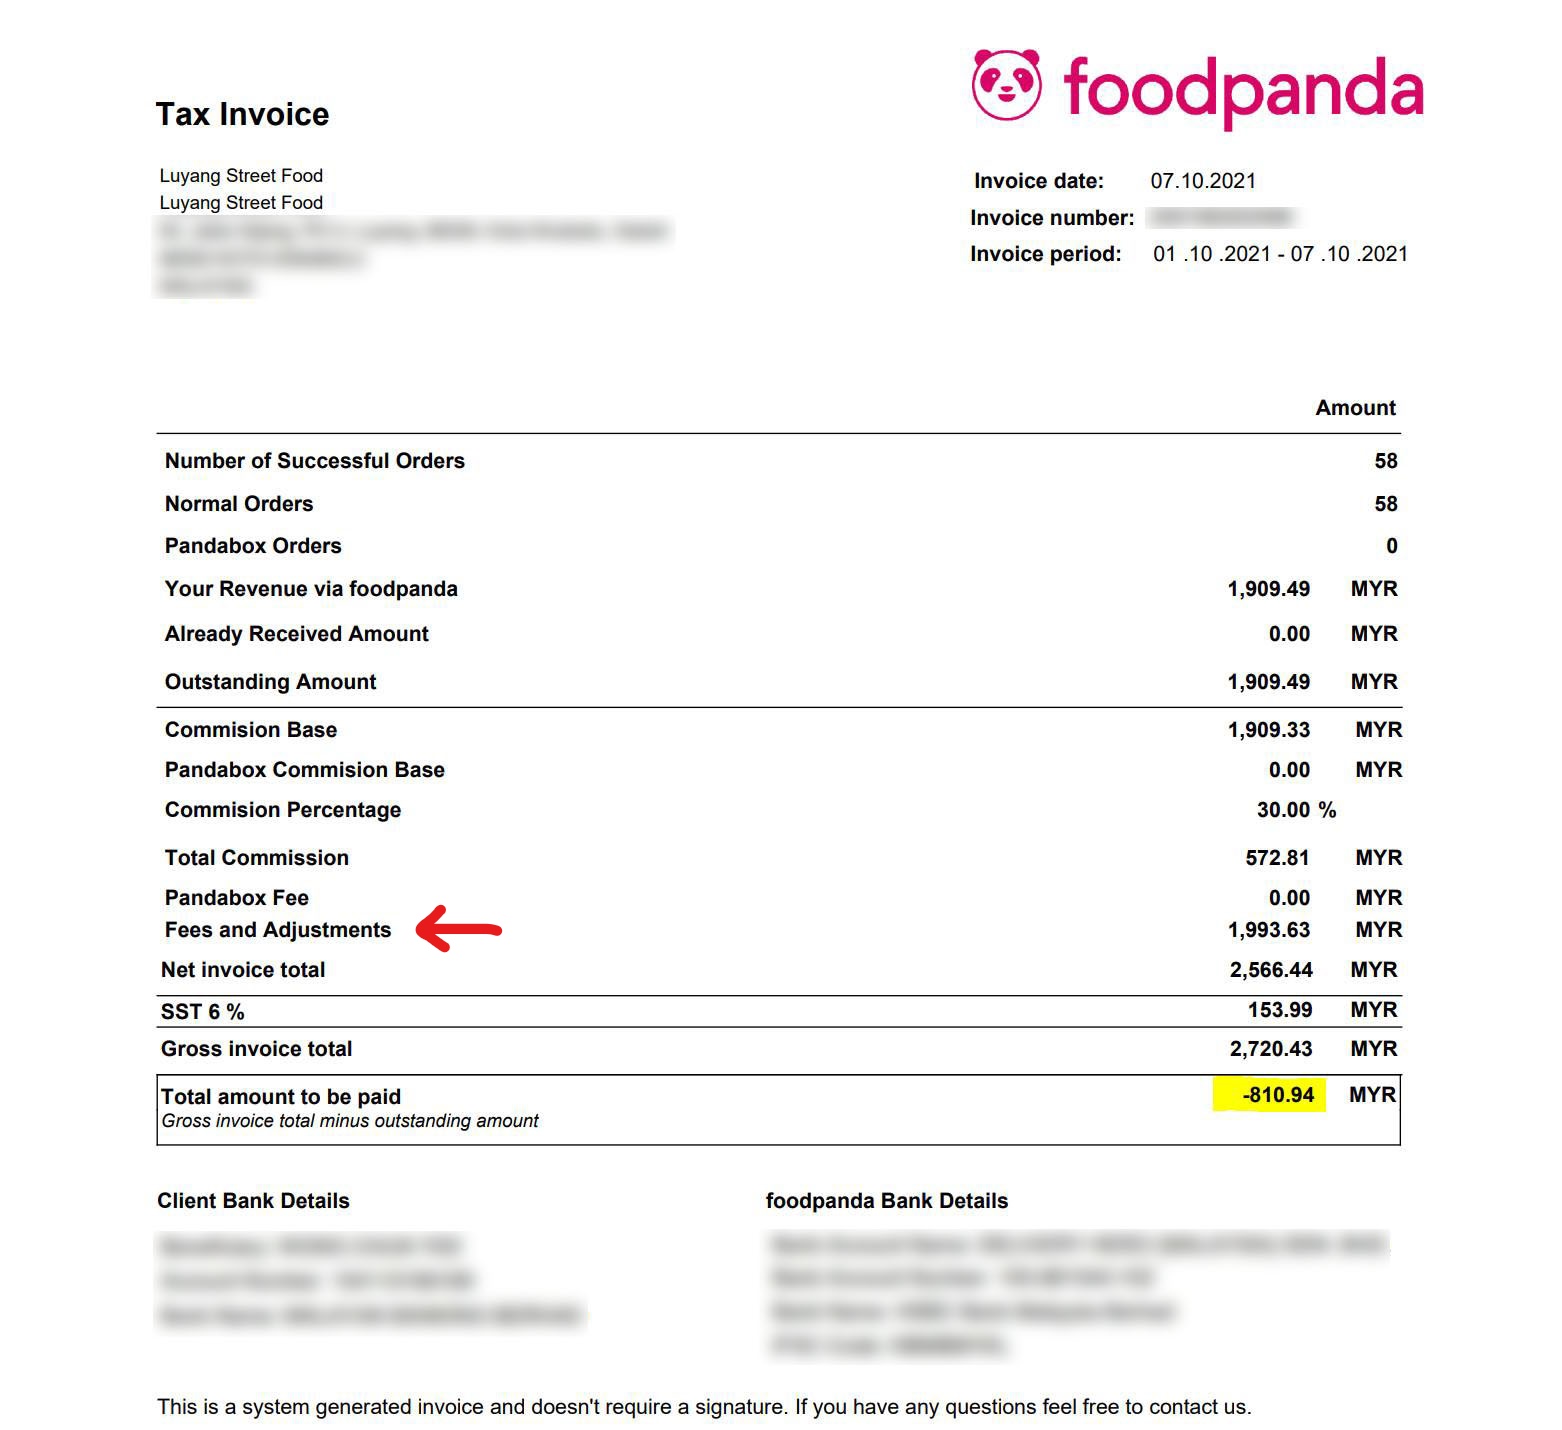 foodpanda hidden fees